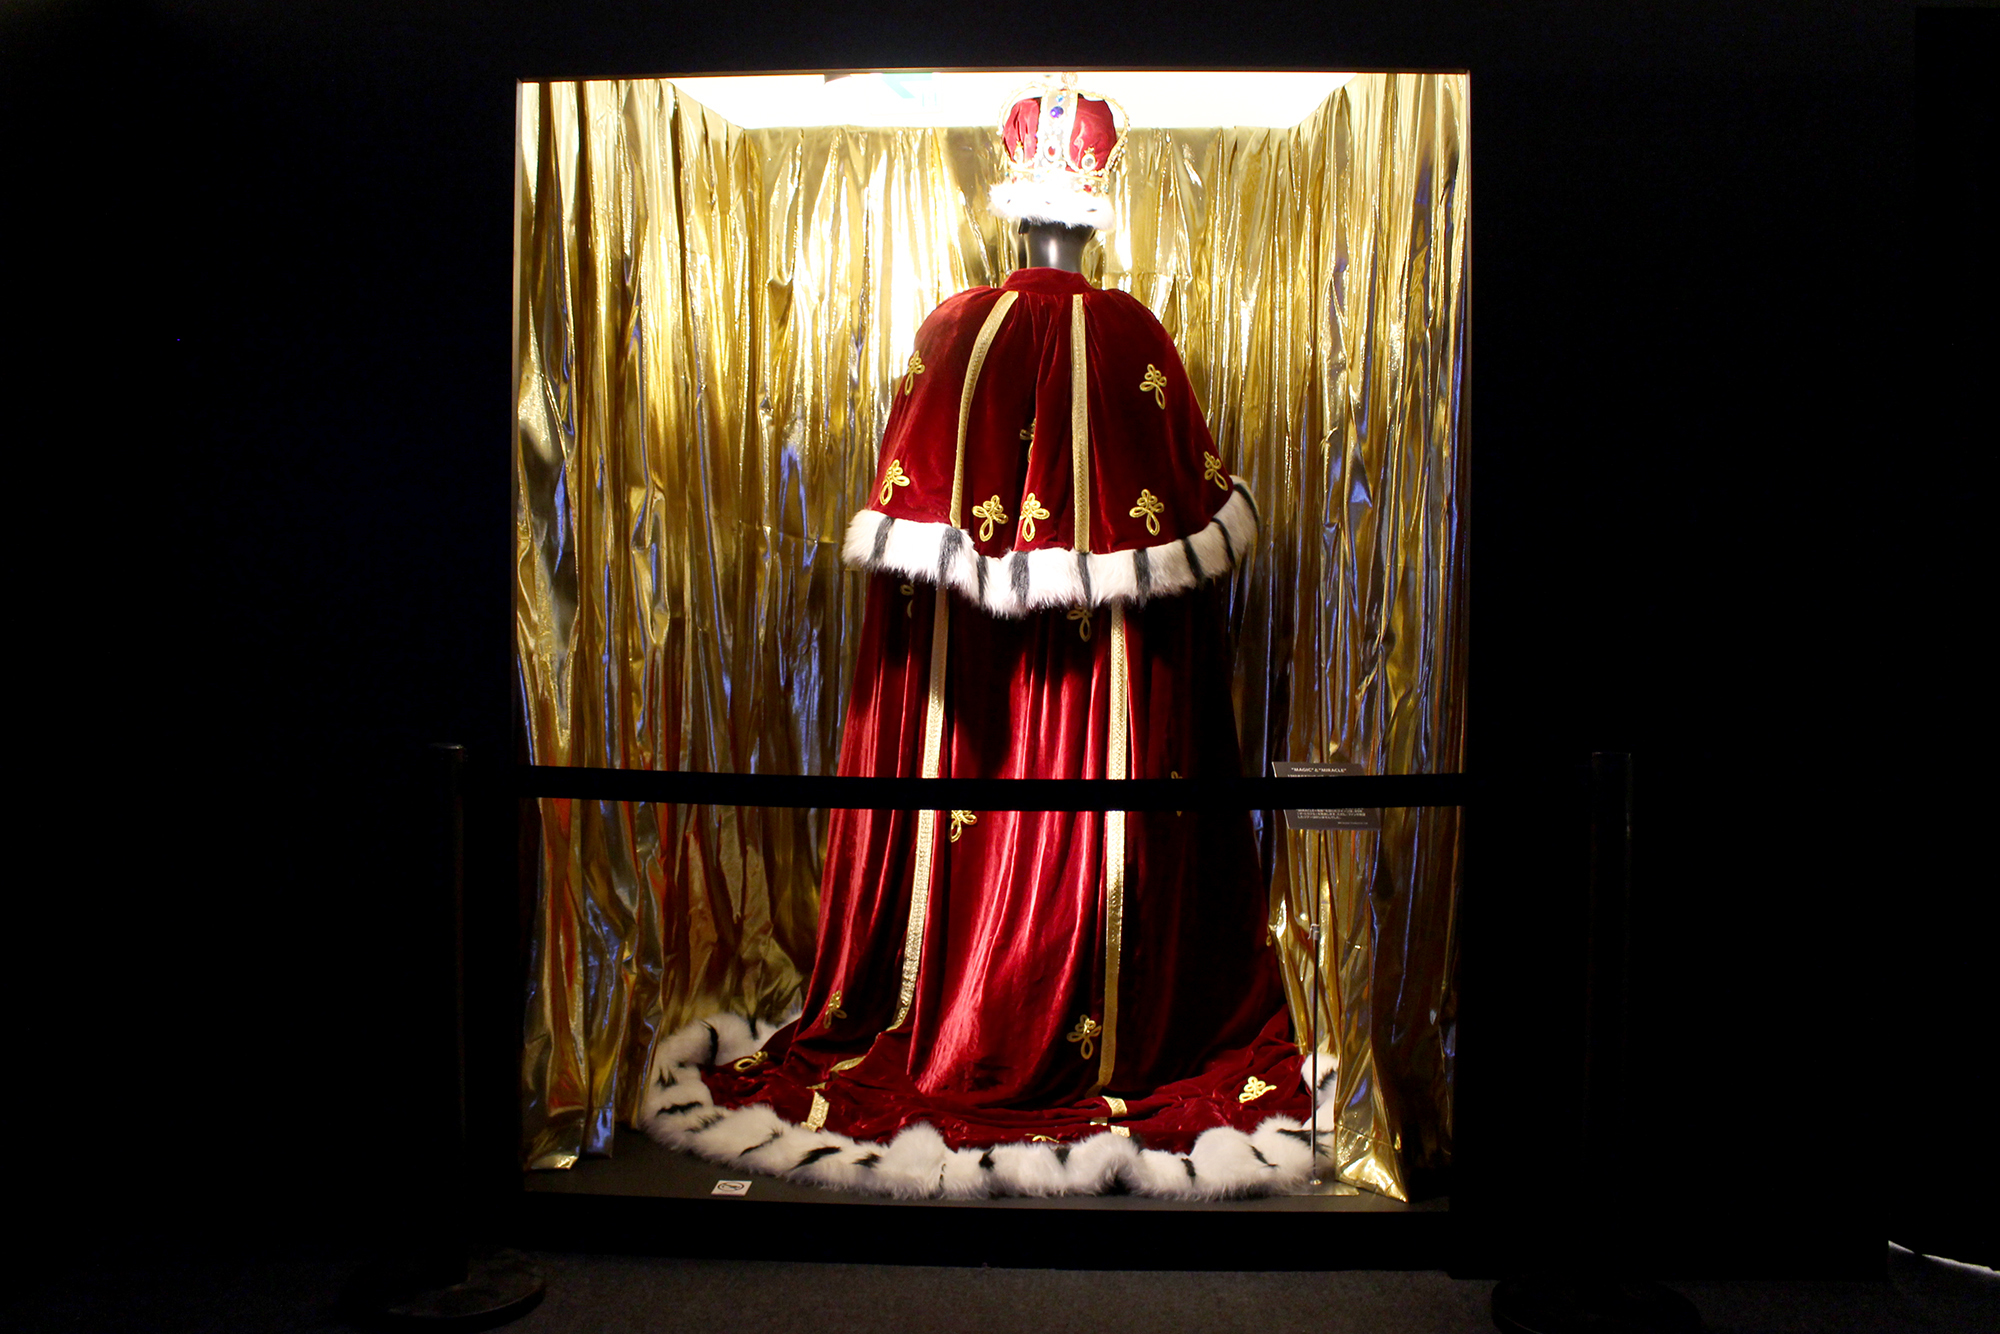 『MAGIC TOUR』のアンコールで着ていた王冠とマント